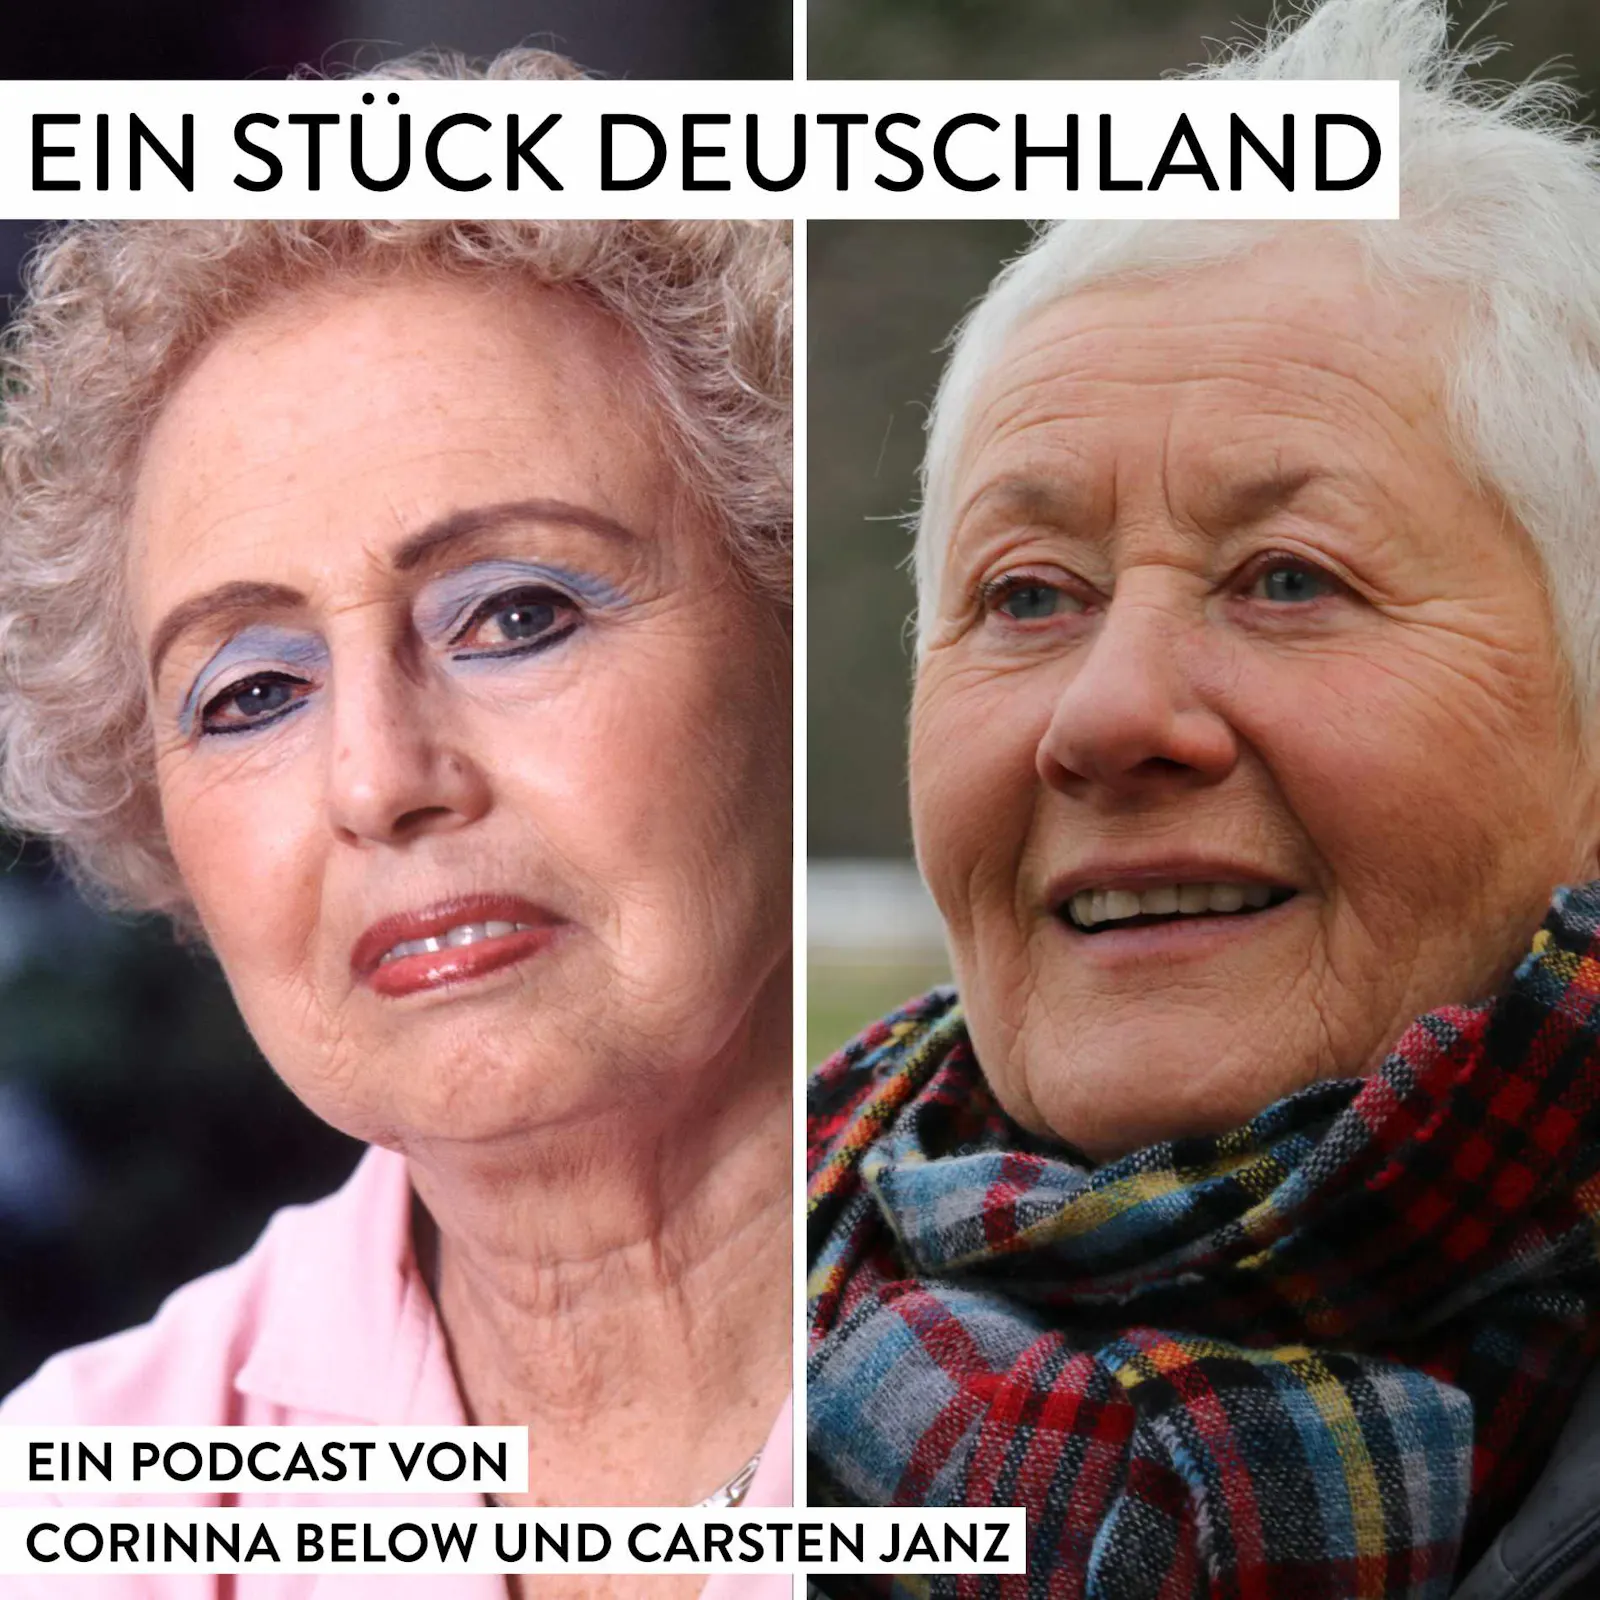 Titelbild der 44. Folge von EIN STÜCK DEUTSCHLAND - der Podcast. Zu sehen sind zwei Frauen: die Protagonistin Rut Marx und die Sprecherin Jutta Hagemann